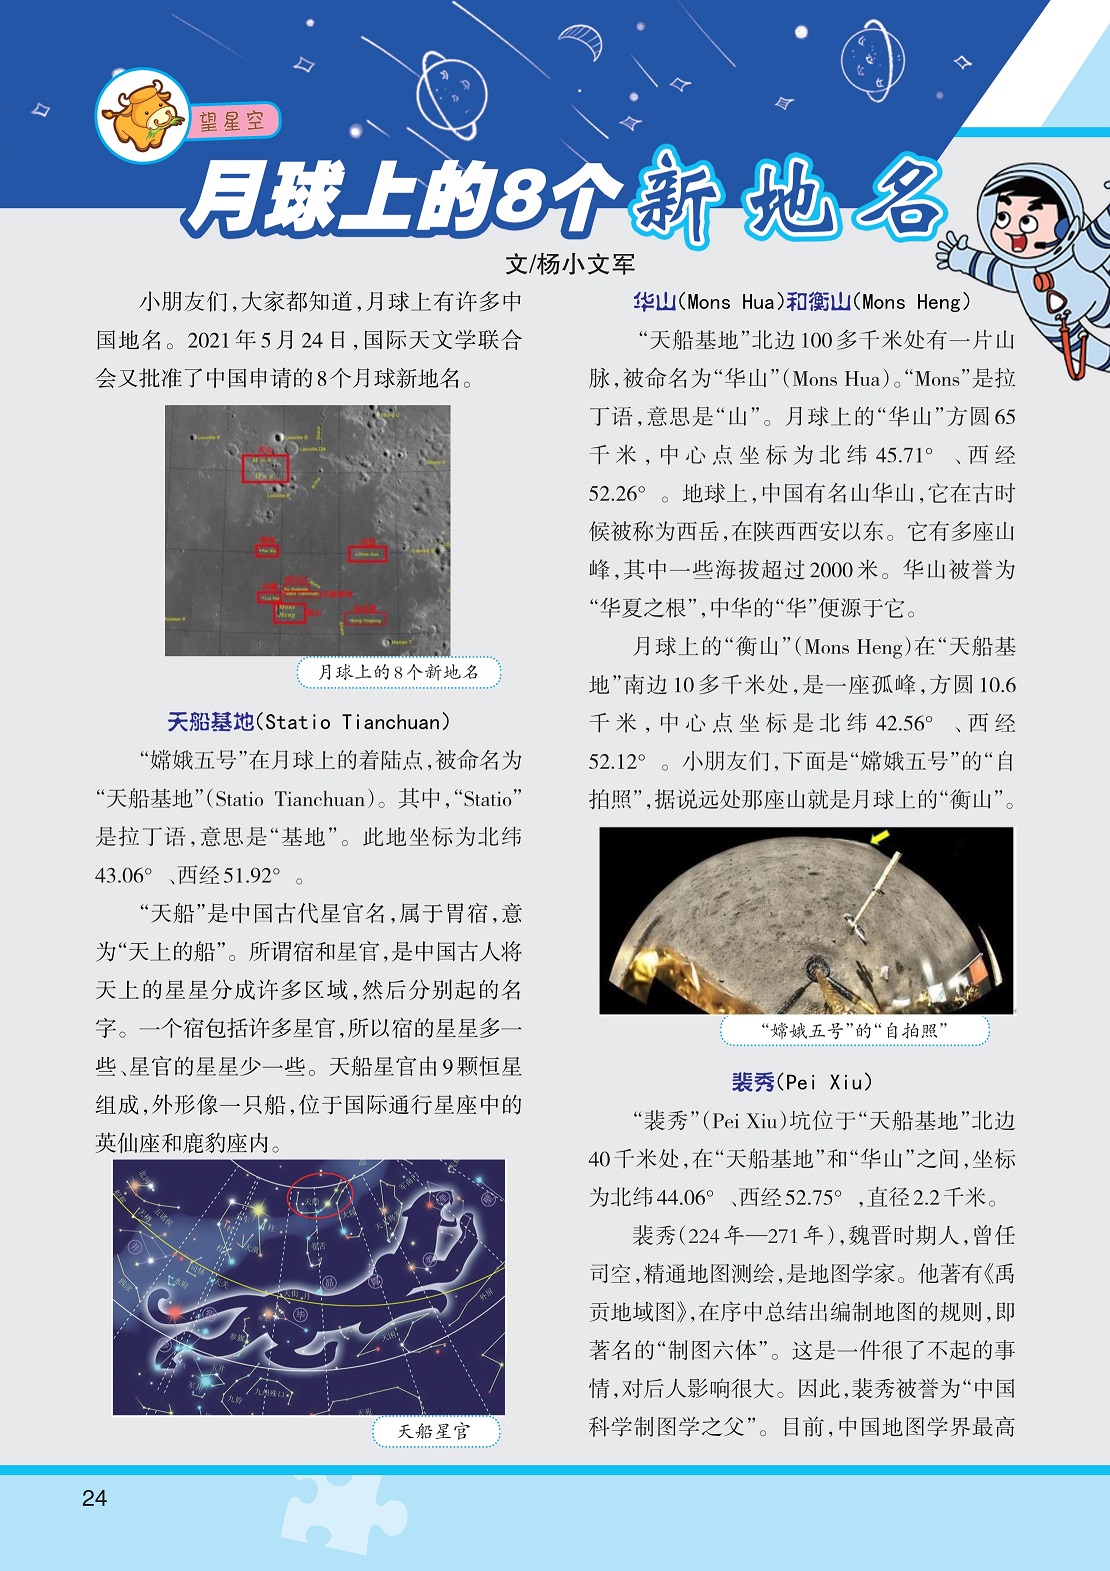 月球上有许多中国地名,“嫦娥五号”在月球上的着陆点被命名为“天船基地”